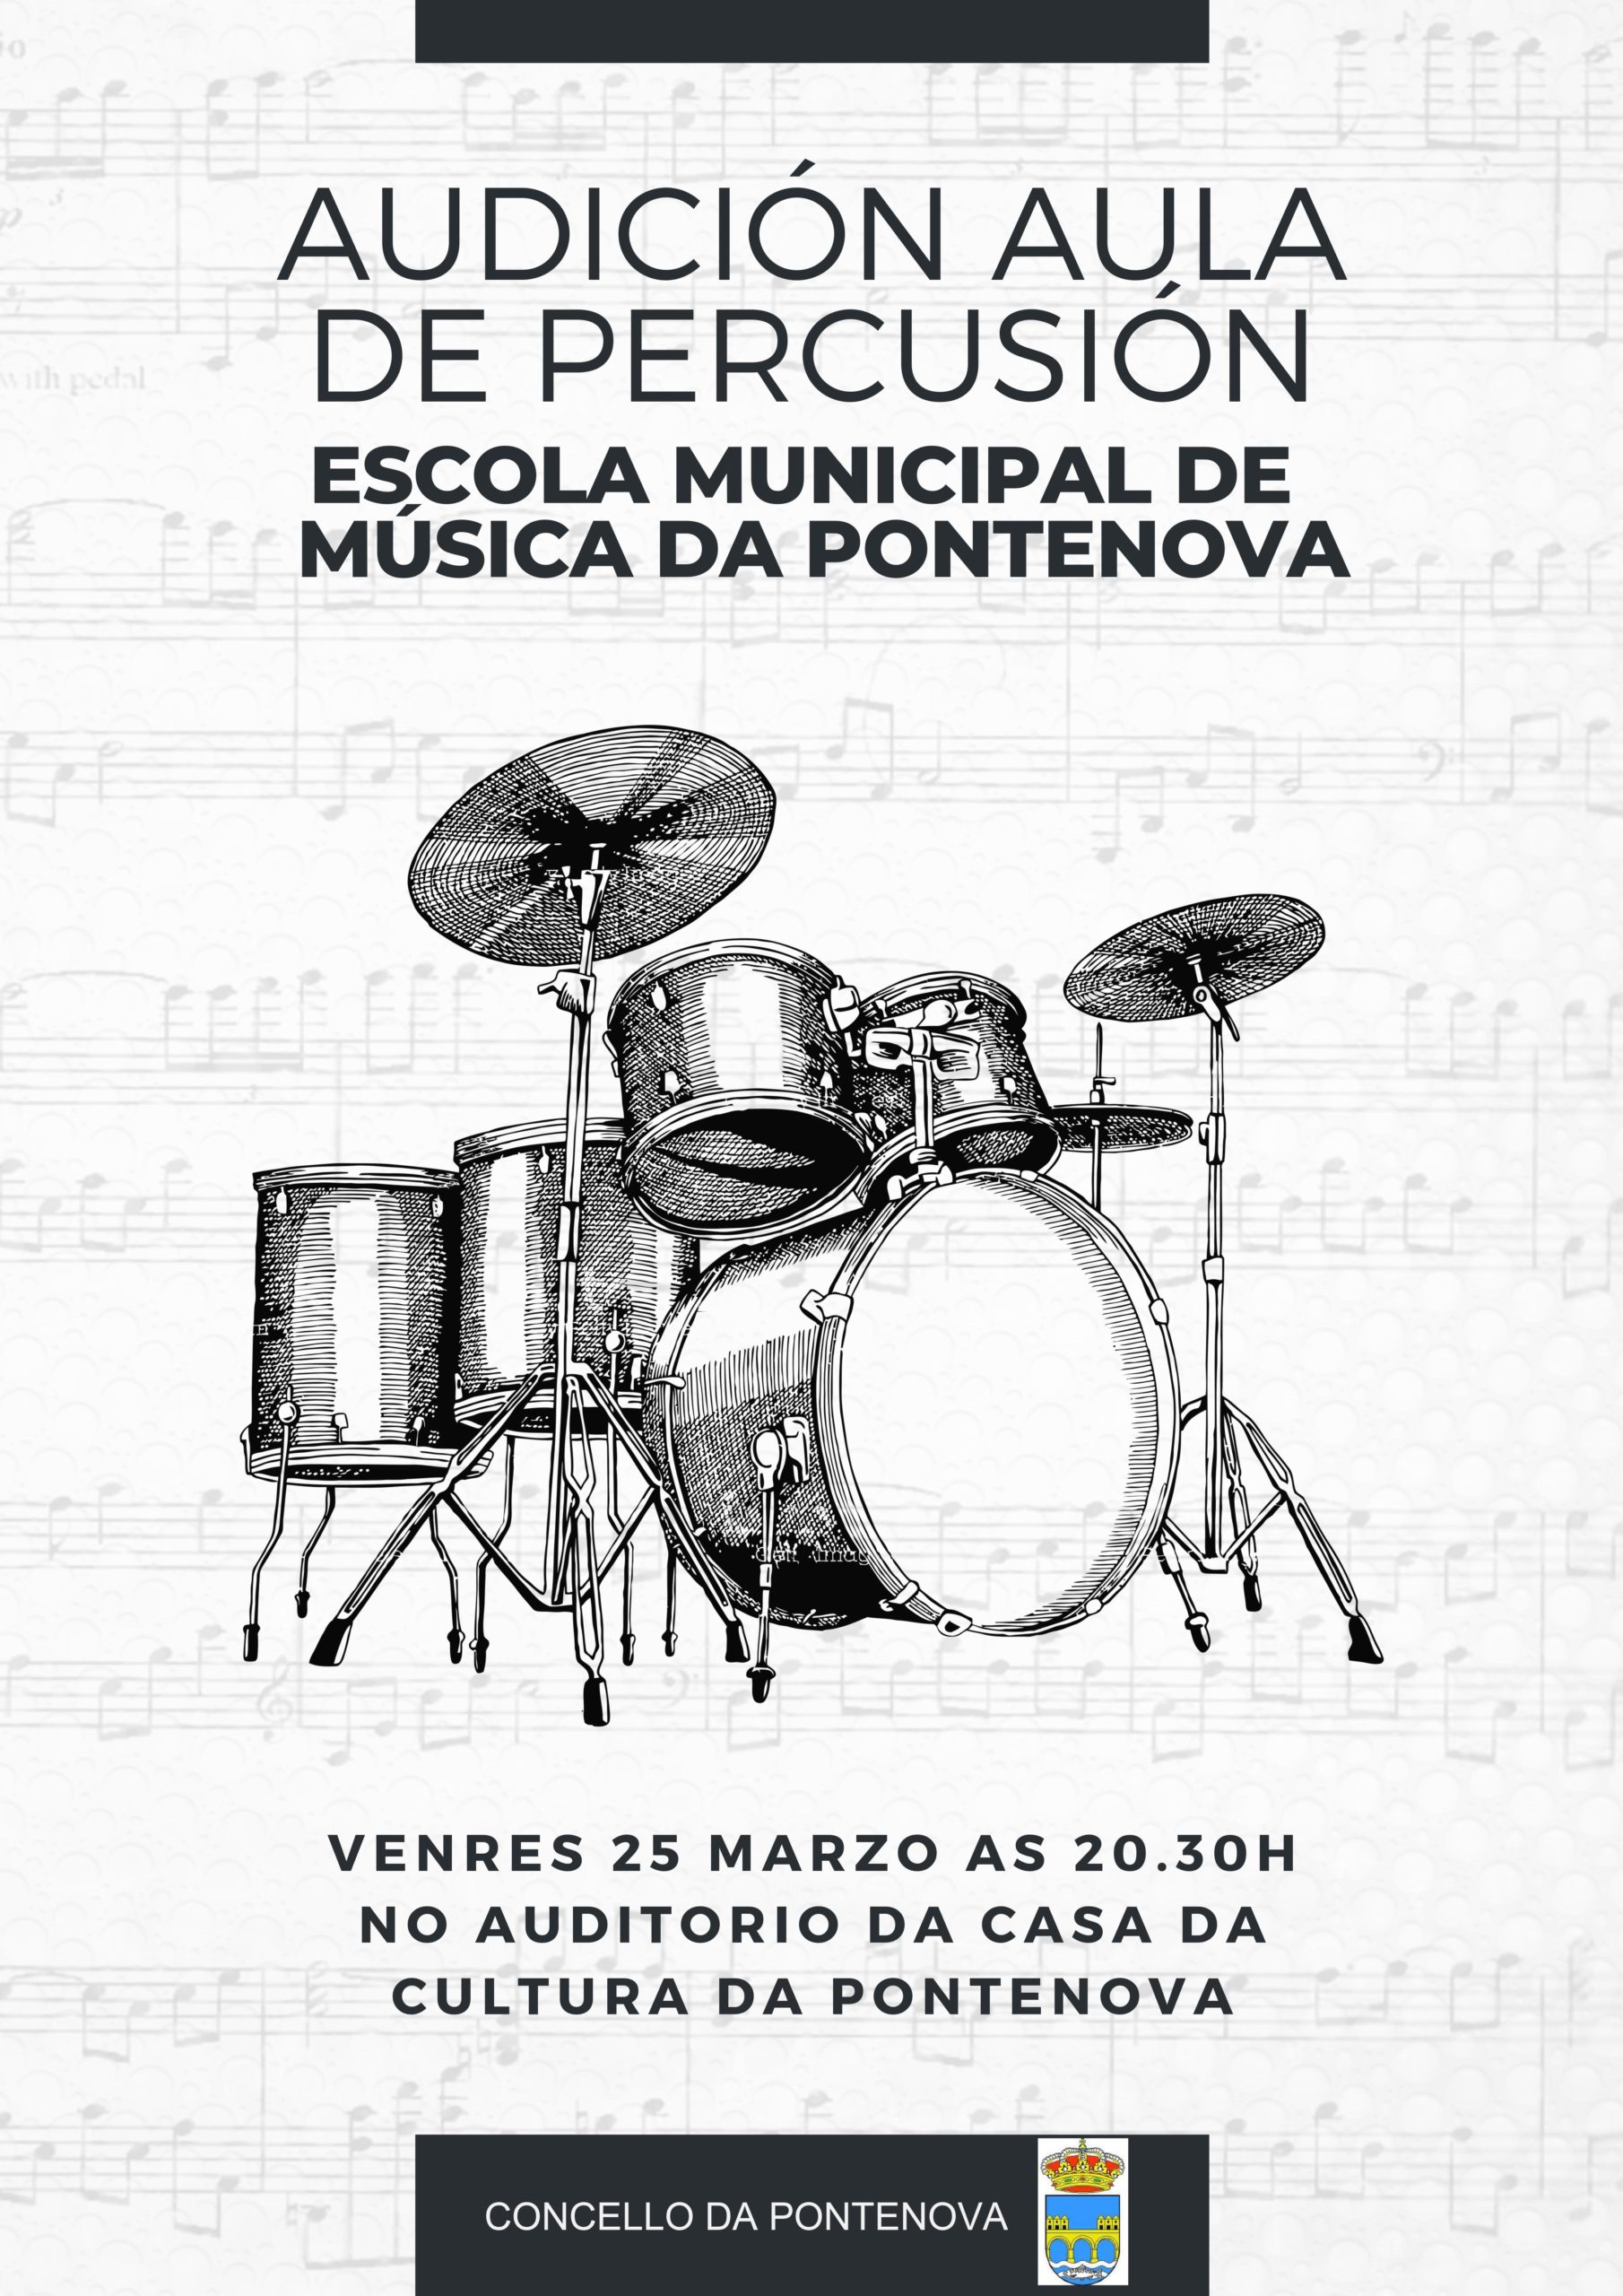 AUDICIÓN AULA DE PERCUSIÓN – Escola Municipal de Música da Pontenova